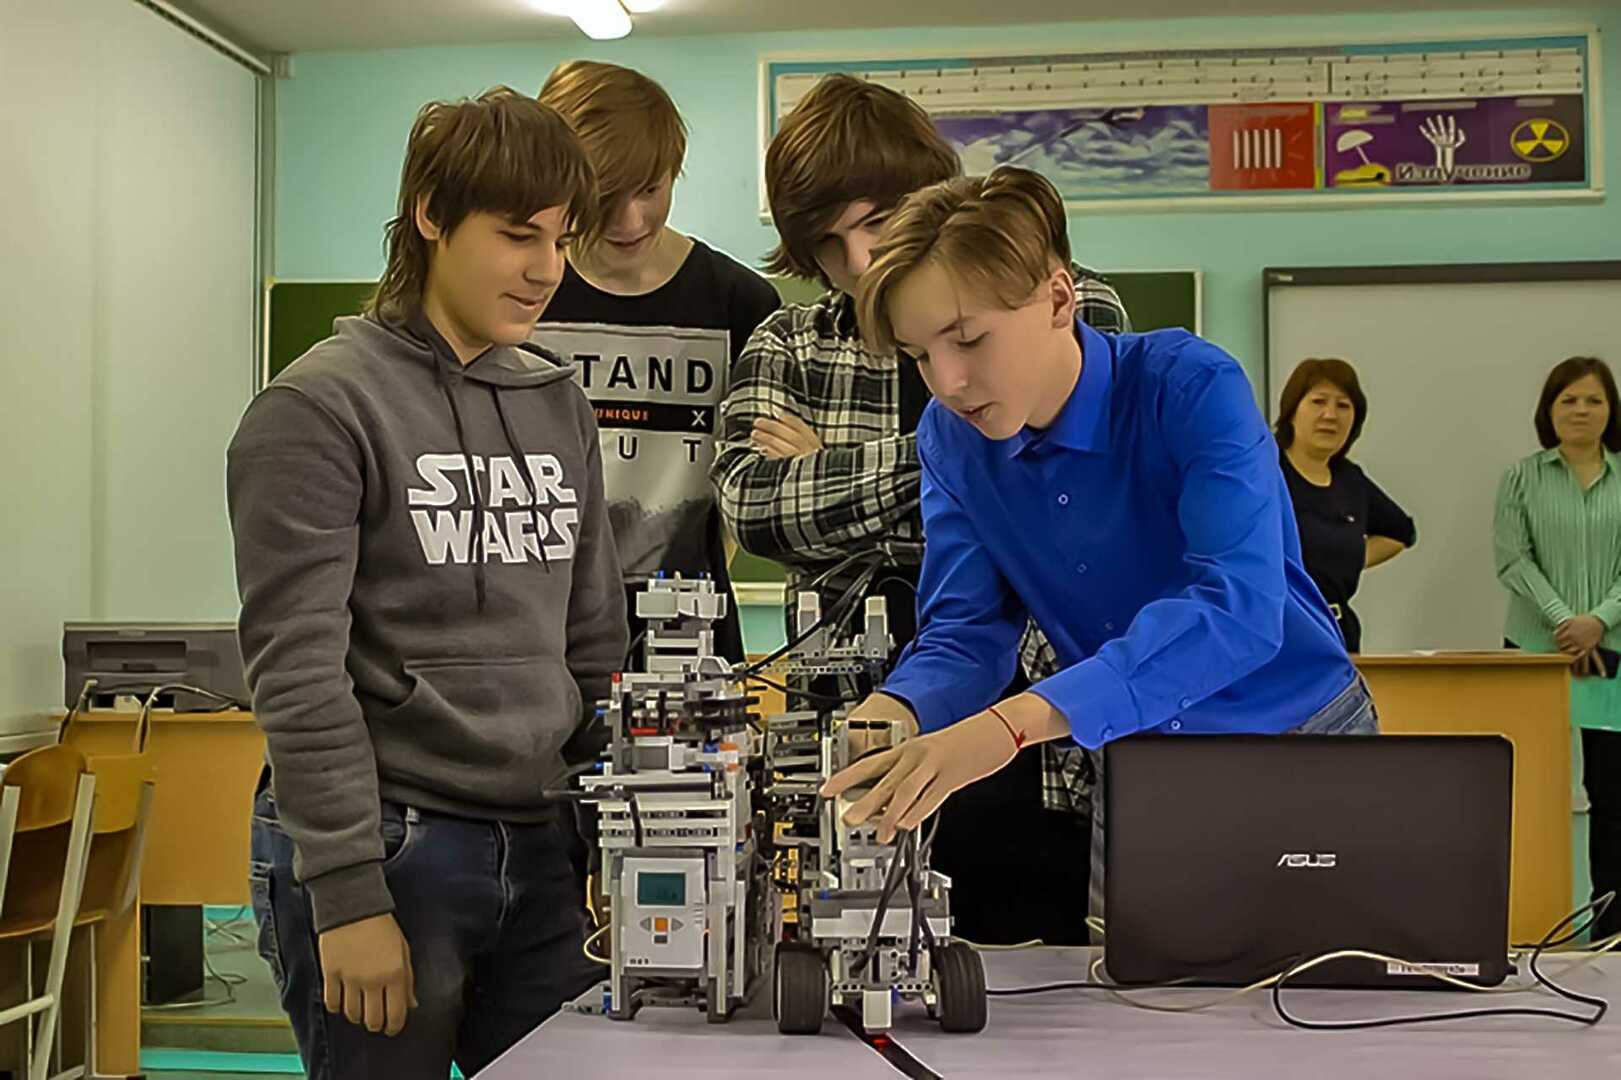 Работа в челябинске 14 лет. Профориентация школьников робототехника. Юные робототехники в школе. Школьники заняты с роботами.